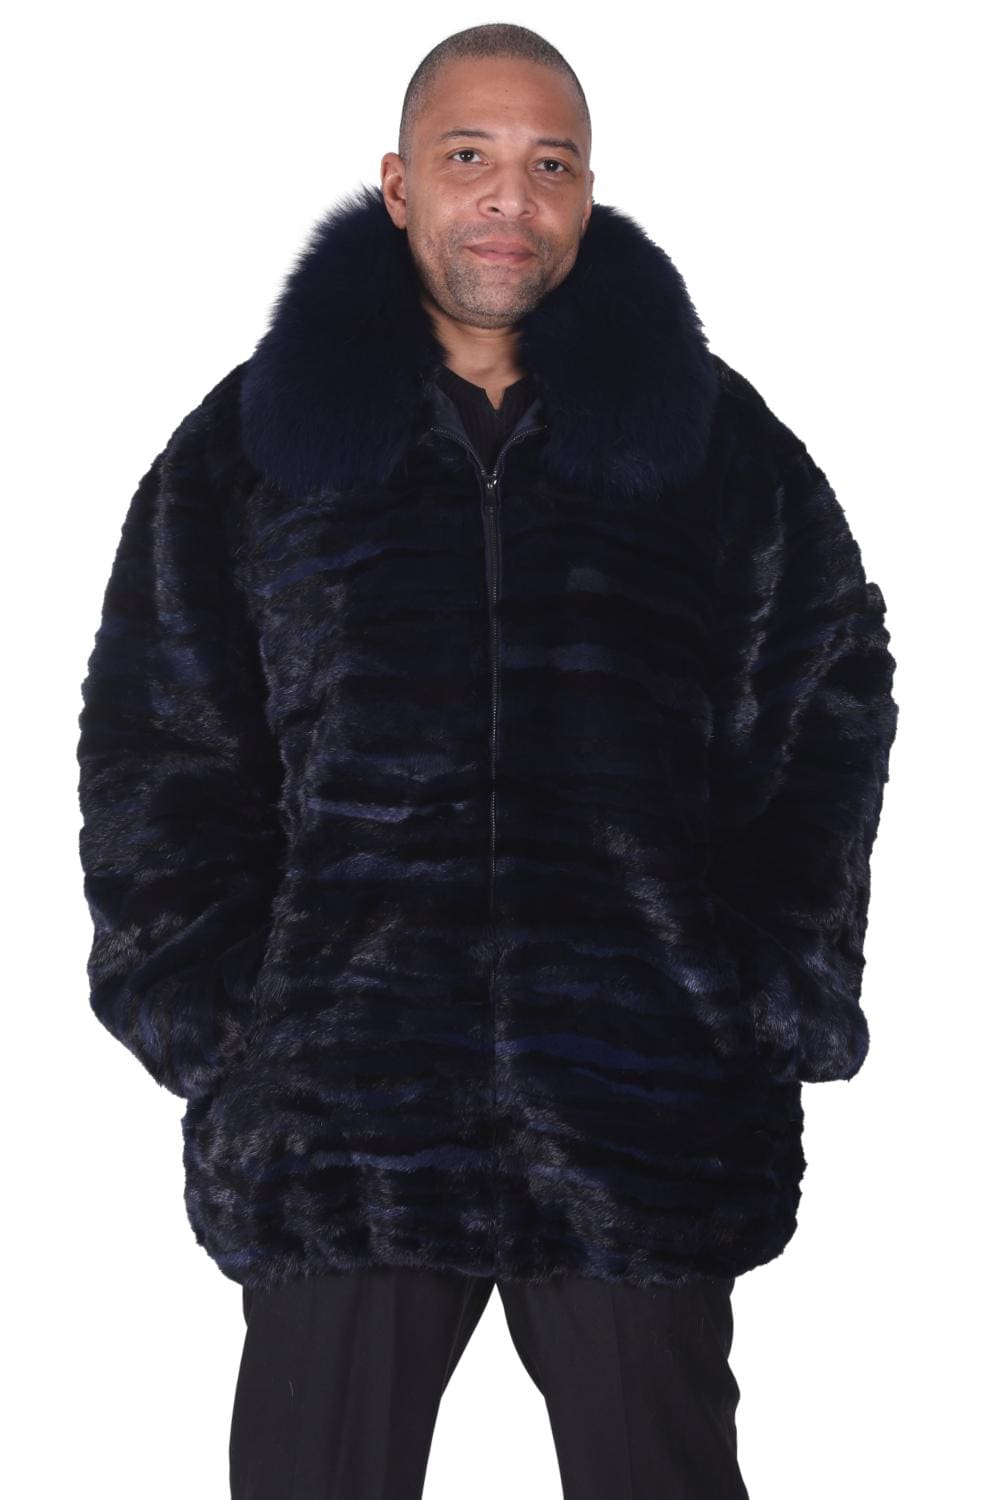 M16 2 Man's navy blue and black mink fur coat Ugent Furs